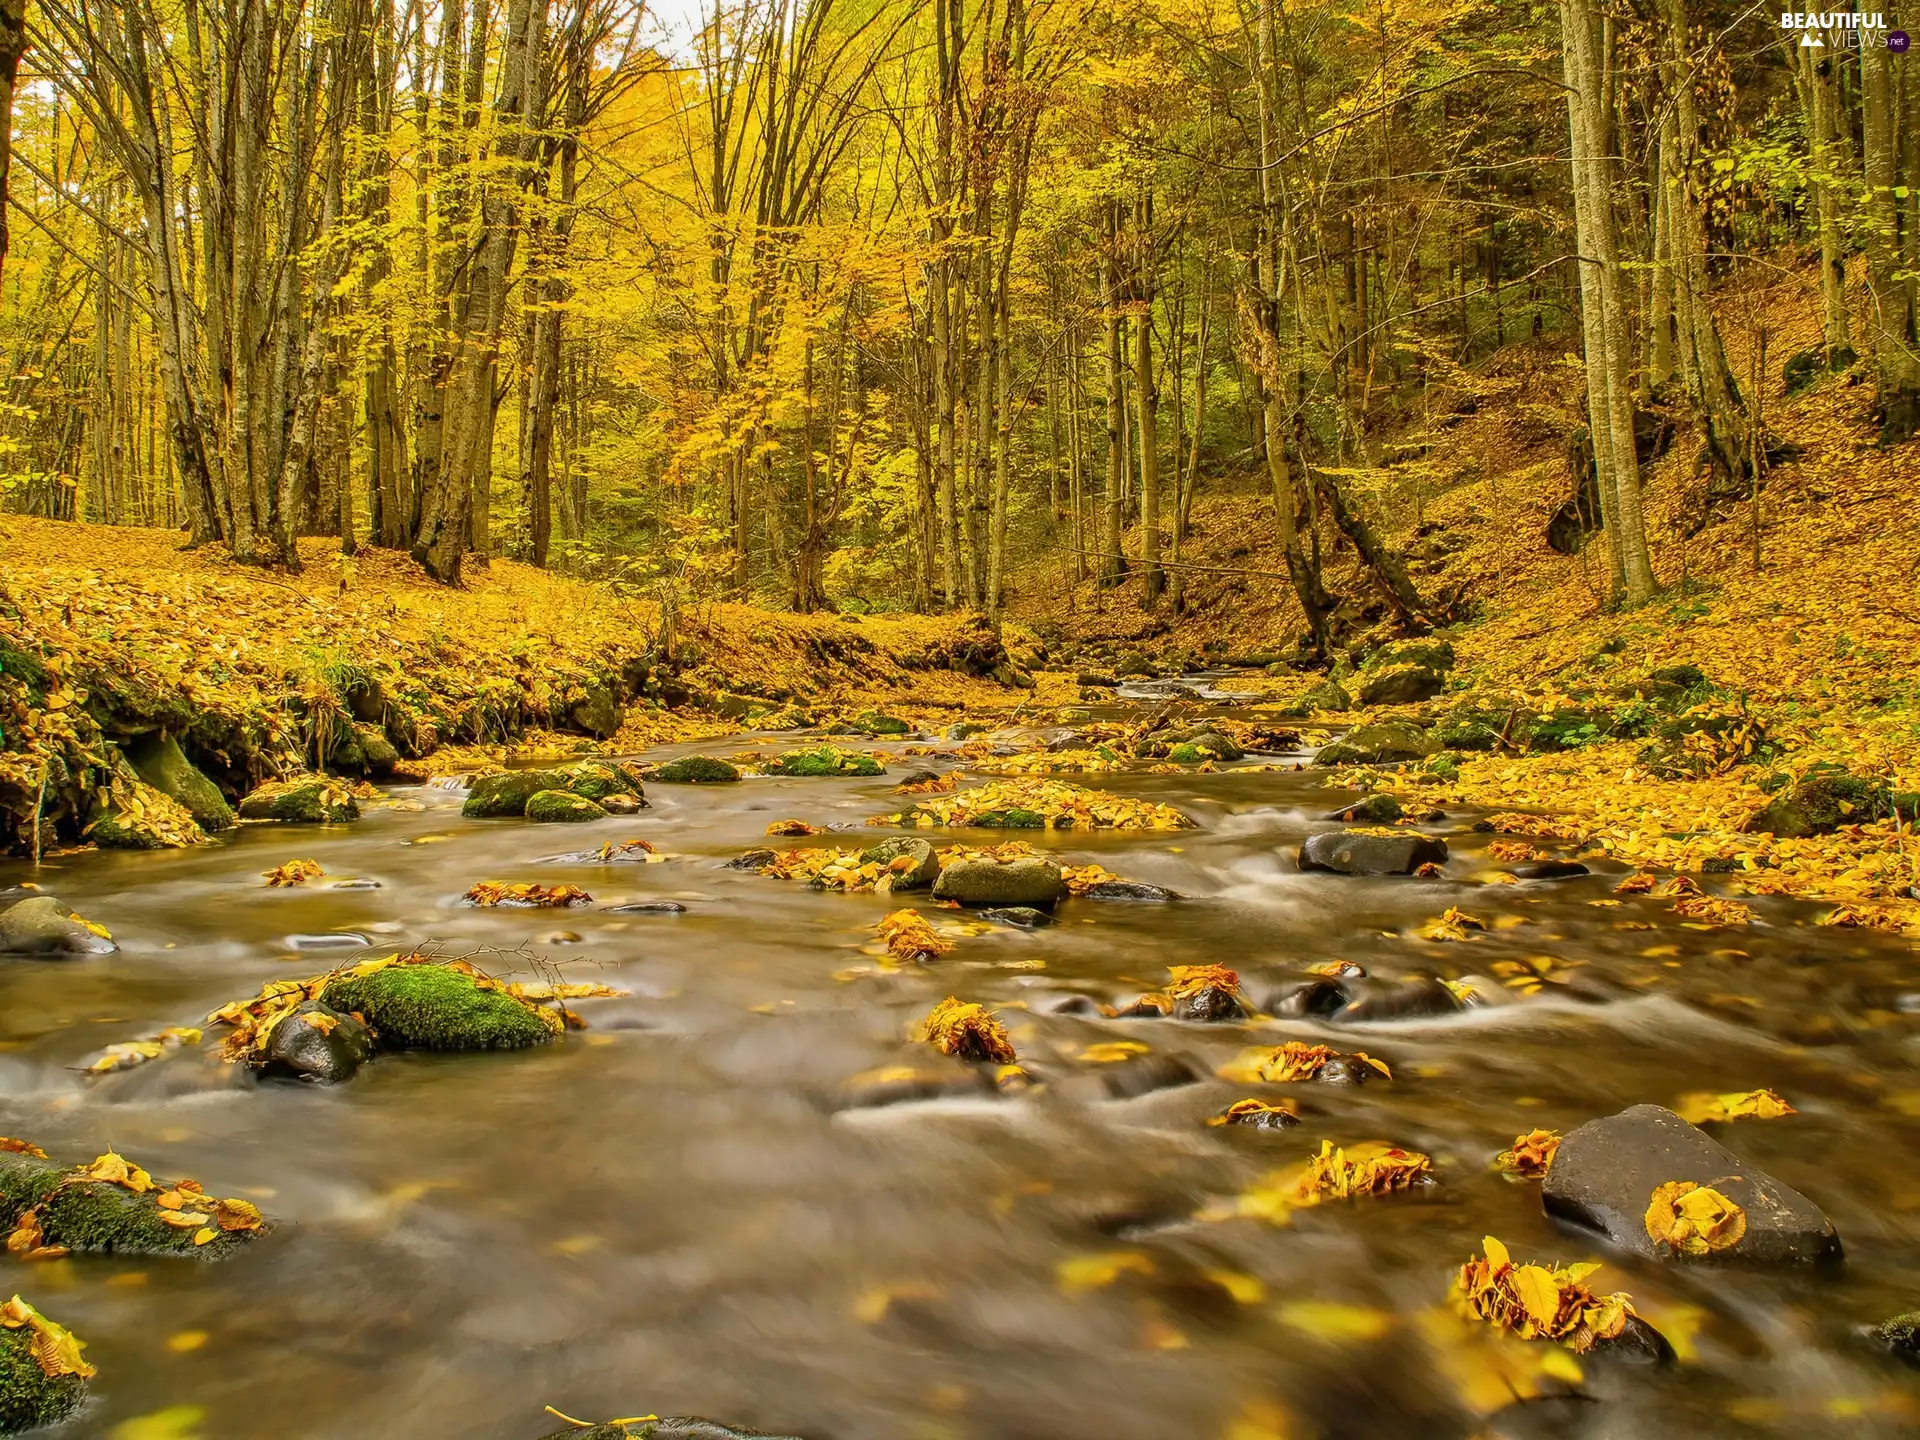 Beatyfull, Autumn, stream, forest